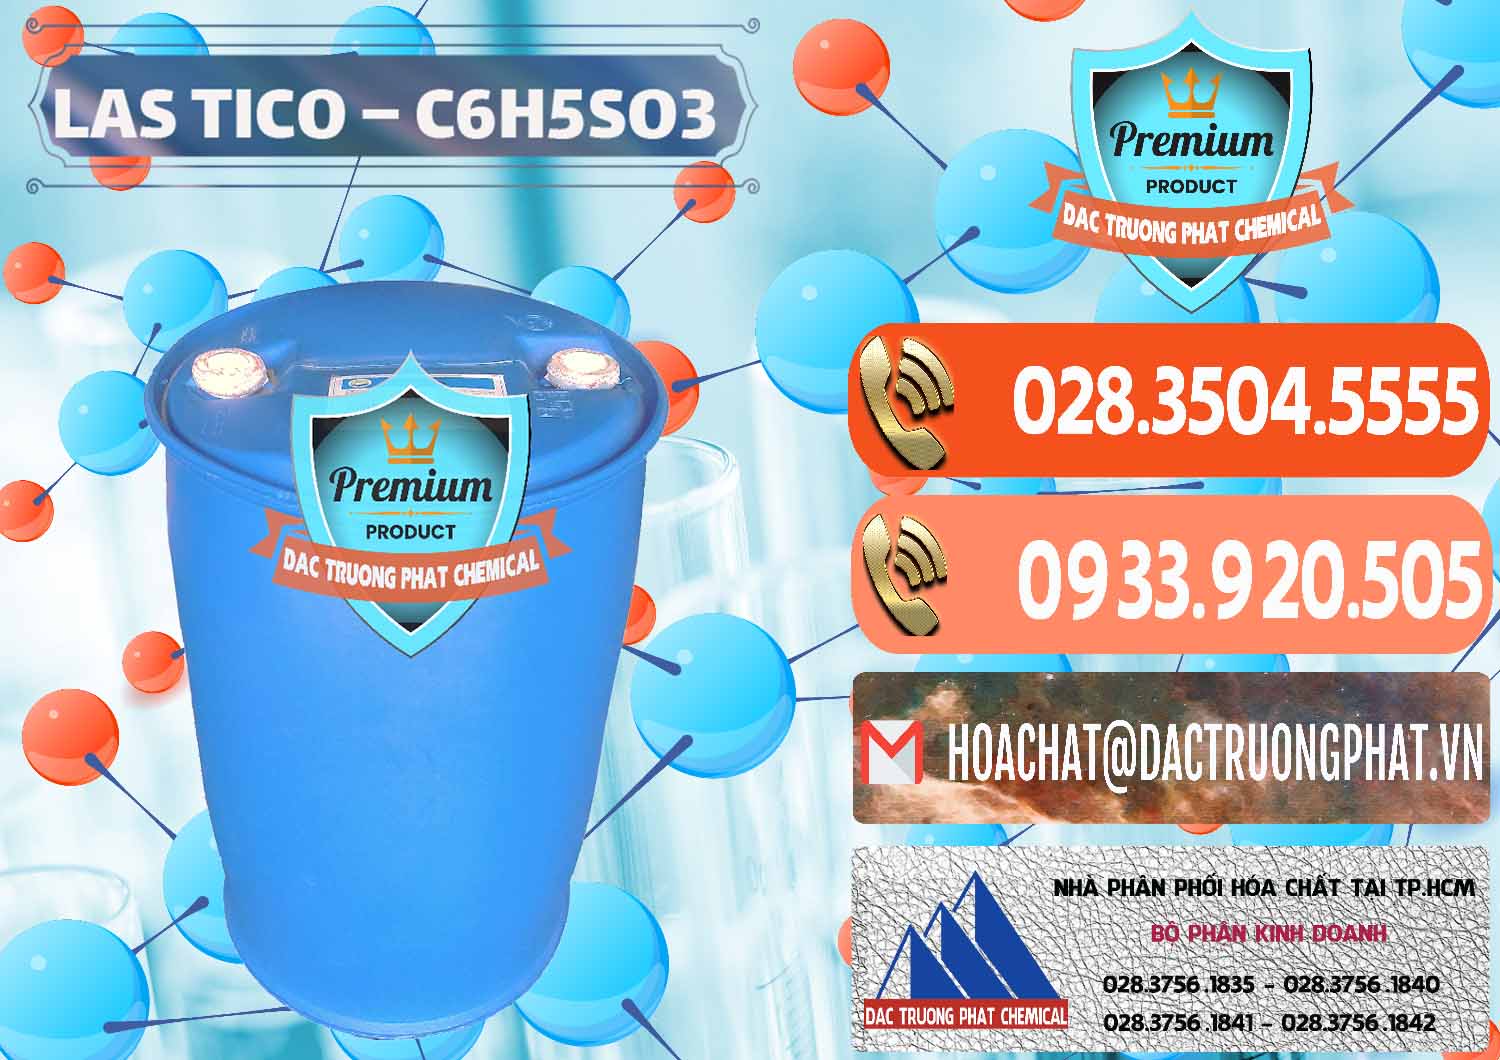 Cty chuyên kinh doanh _ phân phối Chất tạo bọt Las H Tico Việt Nam - 0190 - Nơi kinh doanh & bán hóa chất tại TP.HCM - hoachatmientay.com